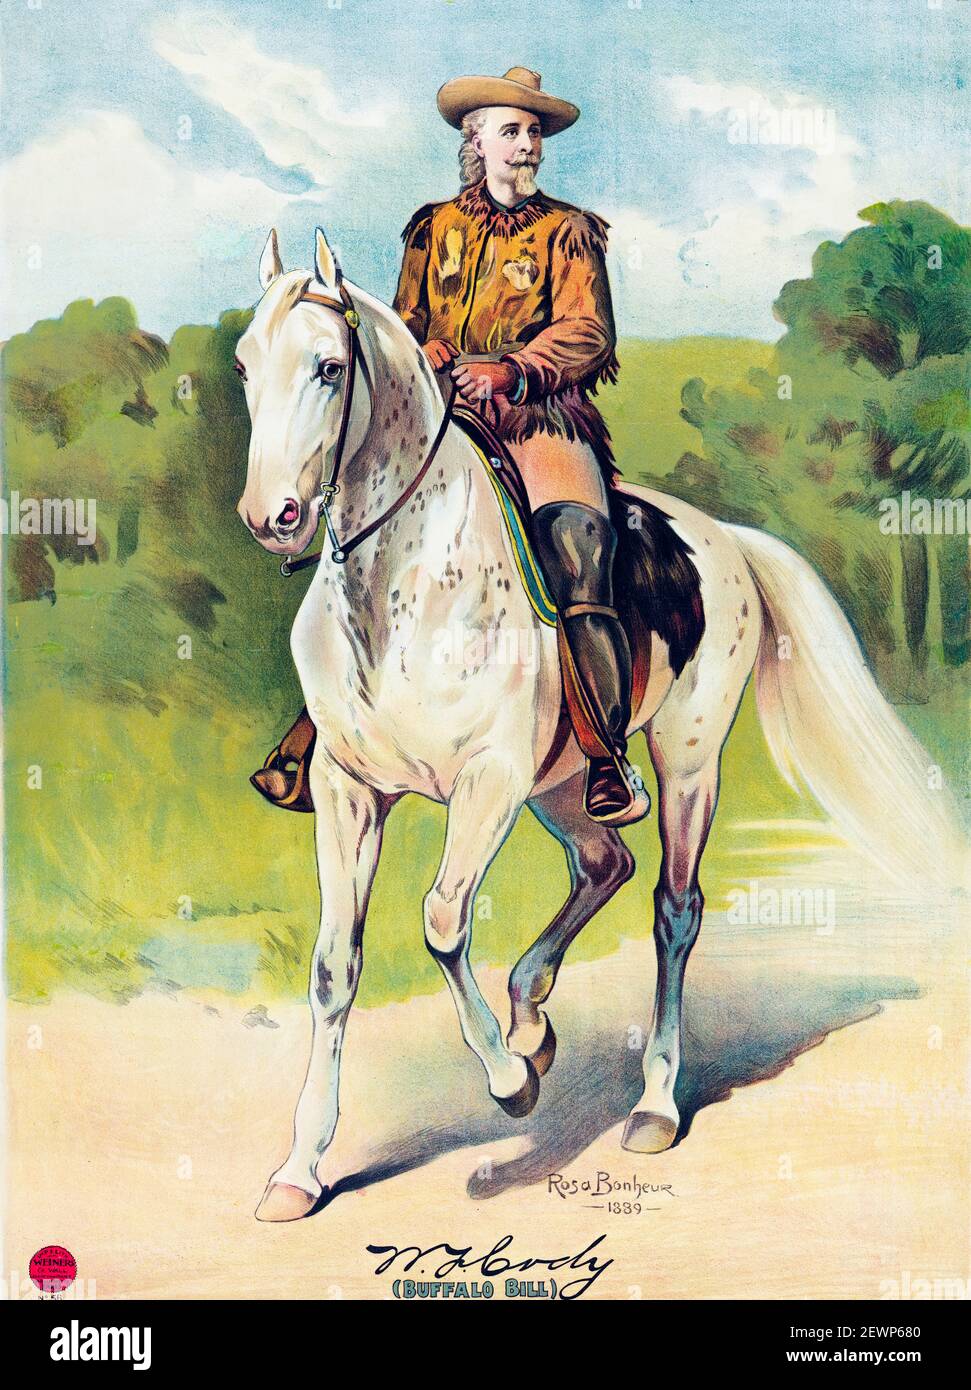 Buffalo Bill Cody (William Frederick Cody, 1846-1917), soldato americano, cacciatore di bisonti e showman, copia del poster del ritratto equestre dopo Rosa Bonheur, 1889 Foto Stock